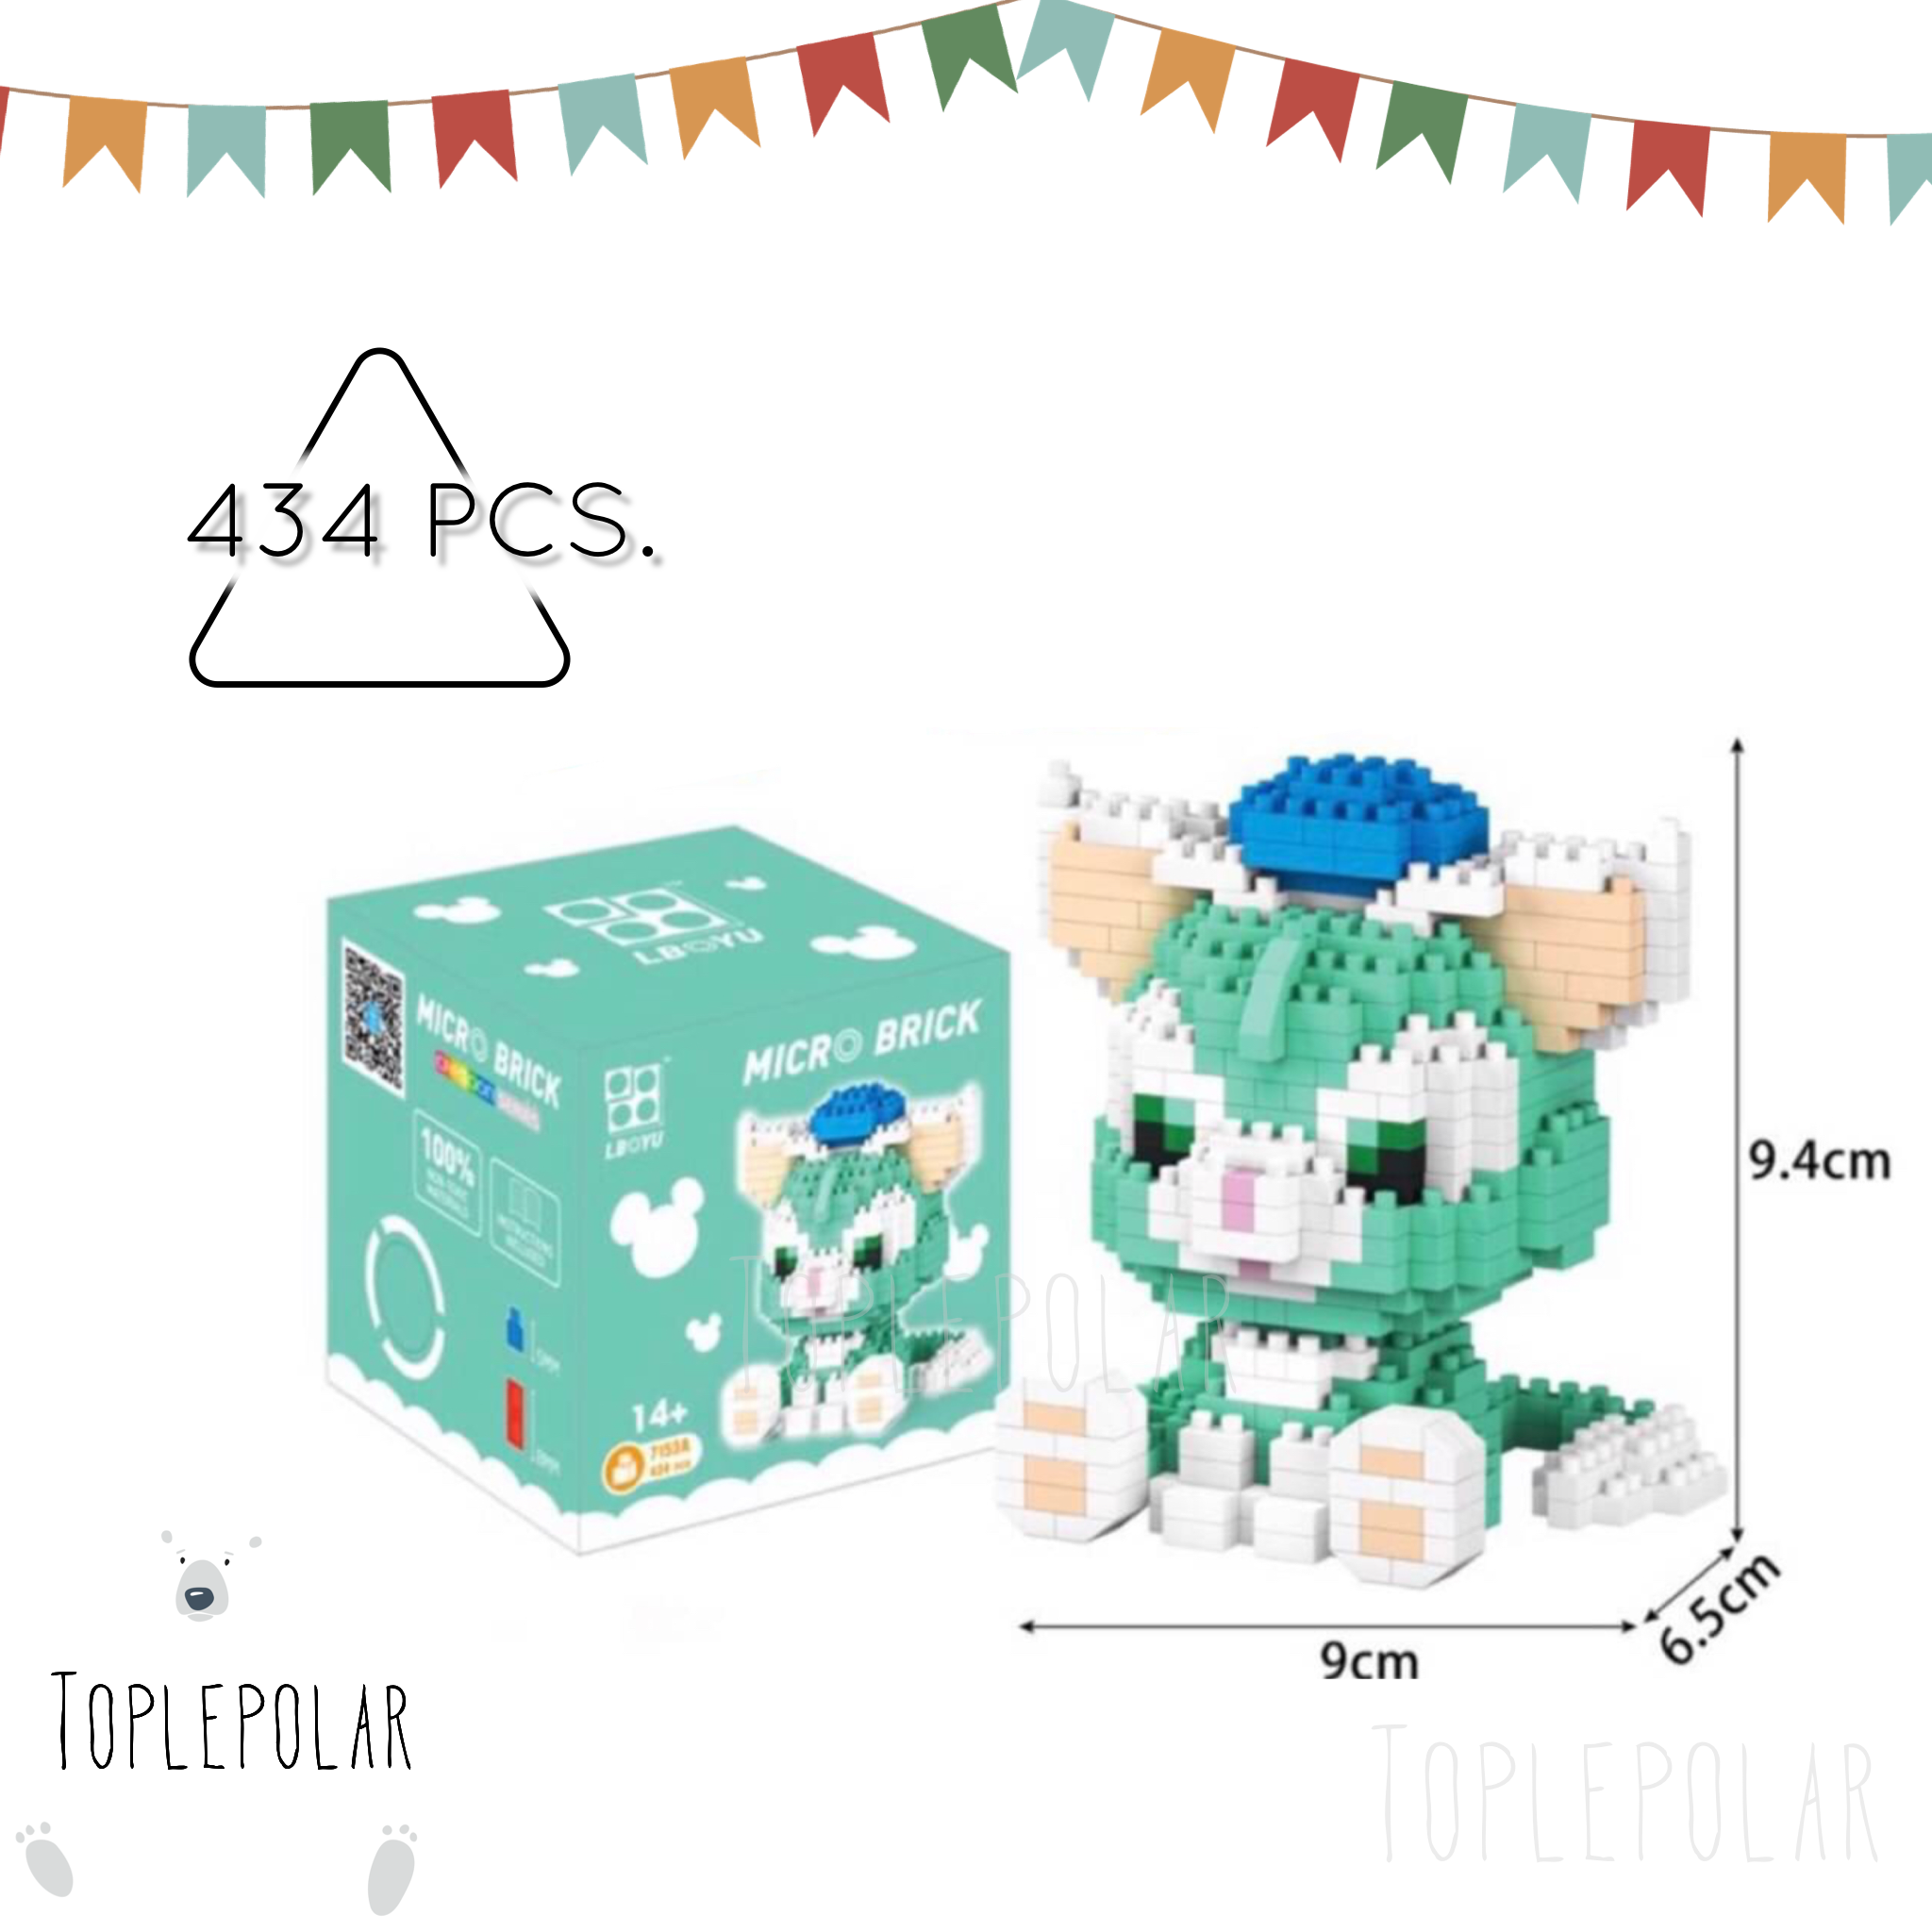 ตัวต่อ BOYU 7153A ชุดดัฟฟี่หมีดิสนีย์ แมวสีเขียวเจลลาโตนี่ จำนวน 434 ชิ้น :  ของเล่น ของสะสม ของขวัญ